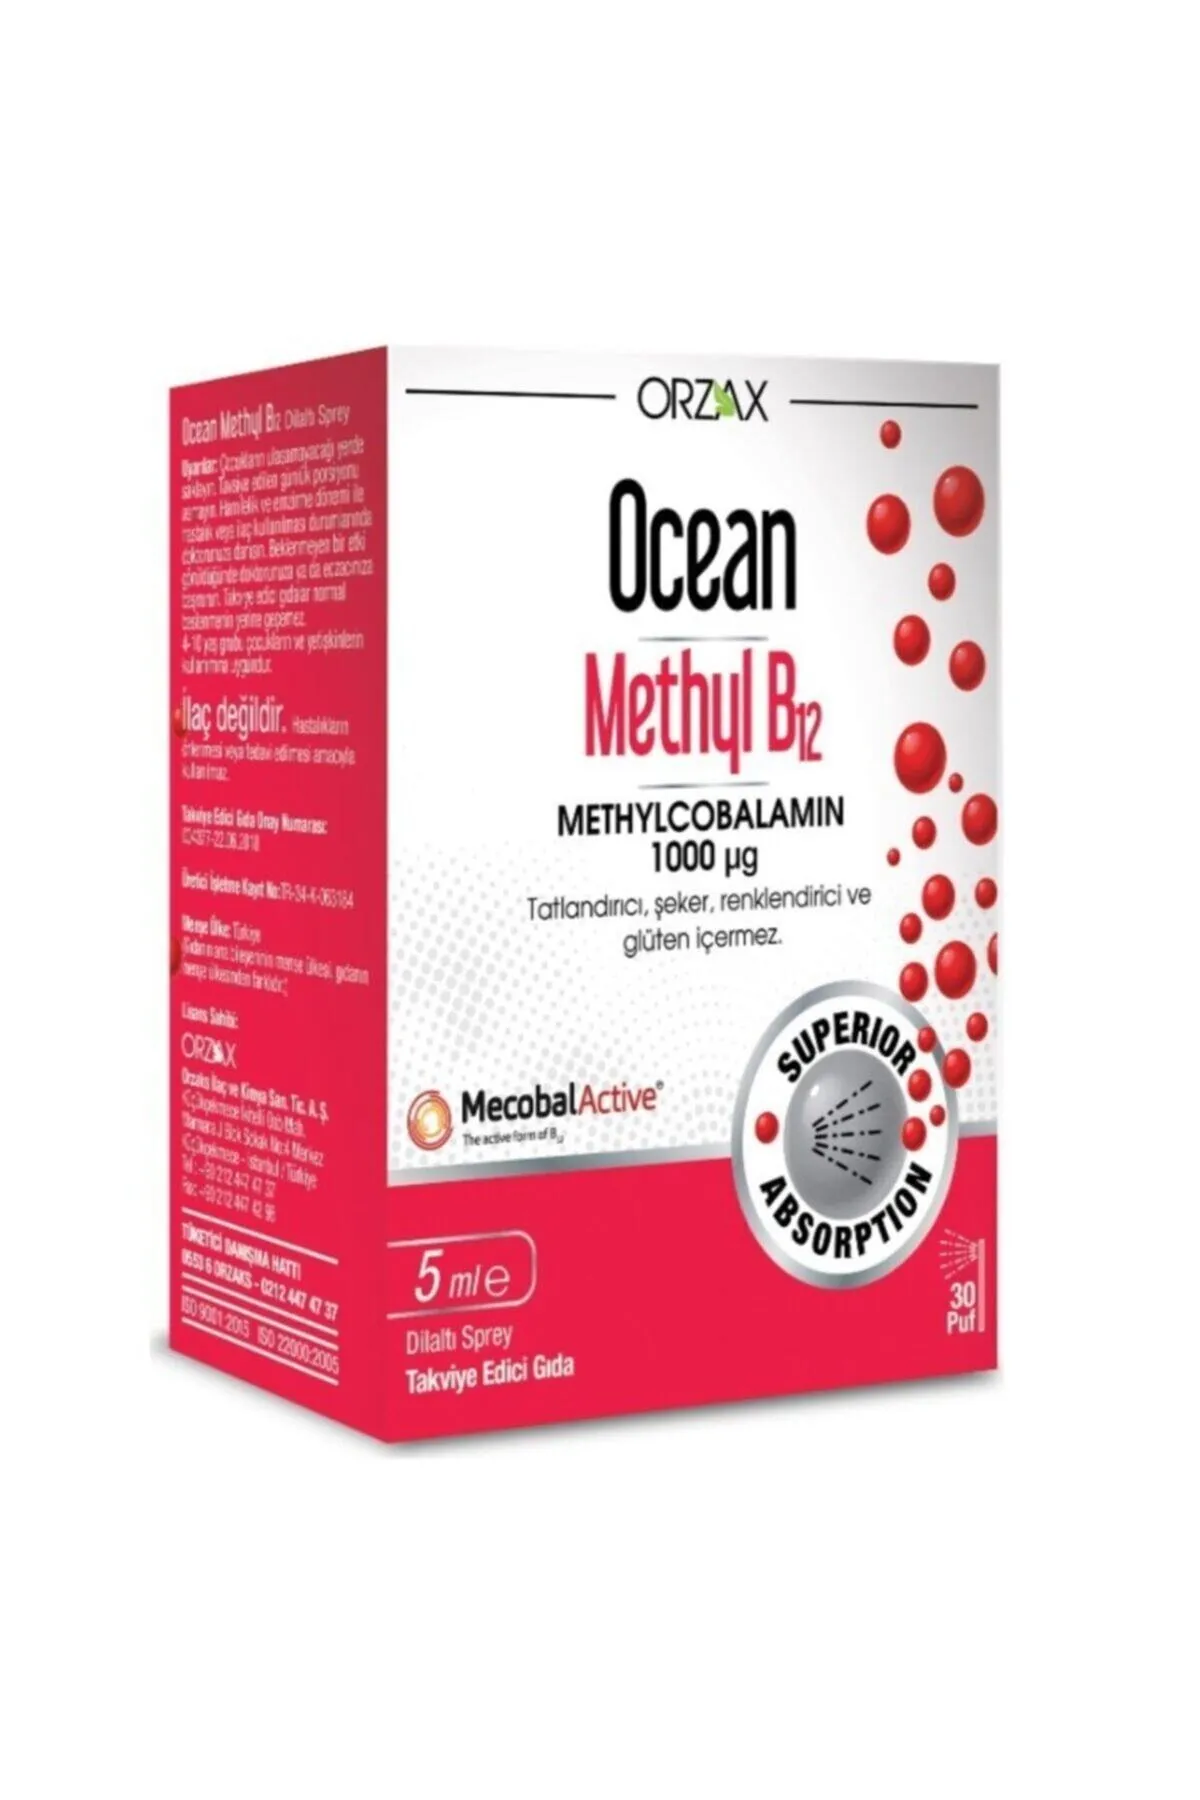 Ocean Methyl 1000 B12 10 ml